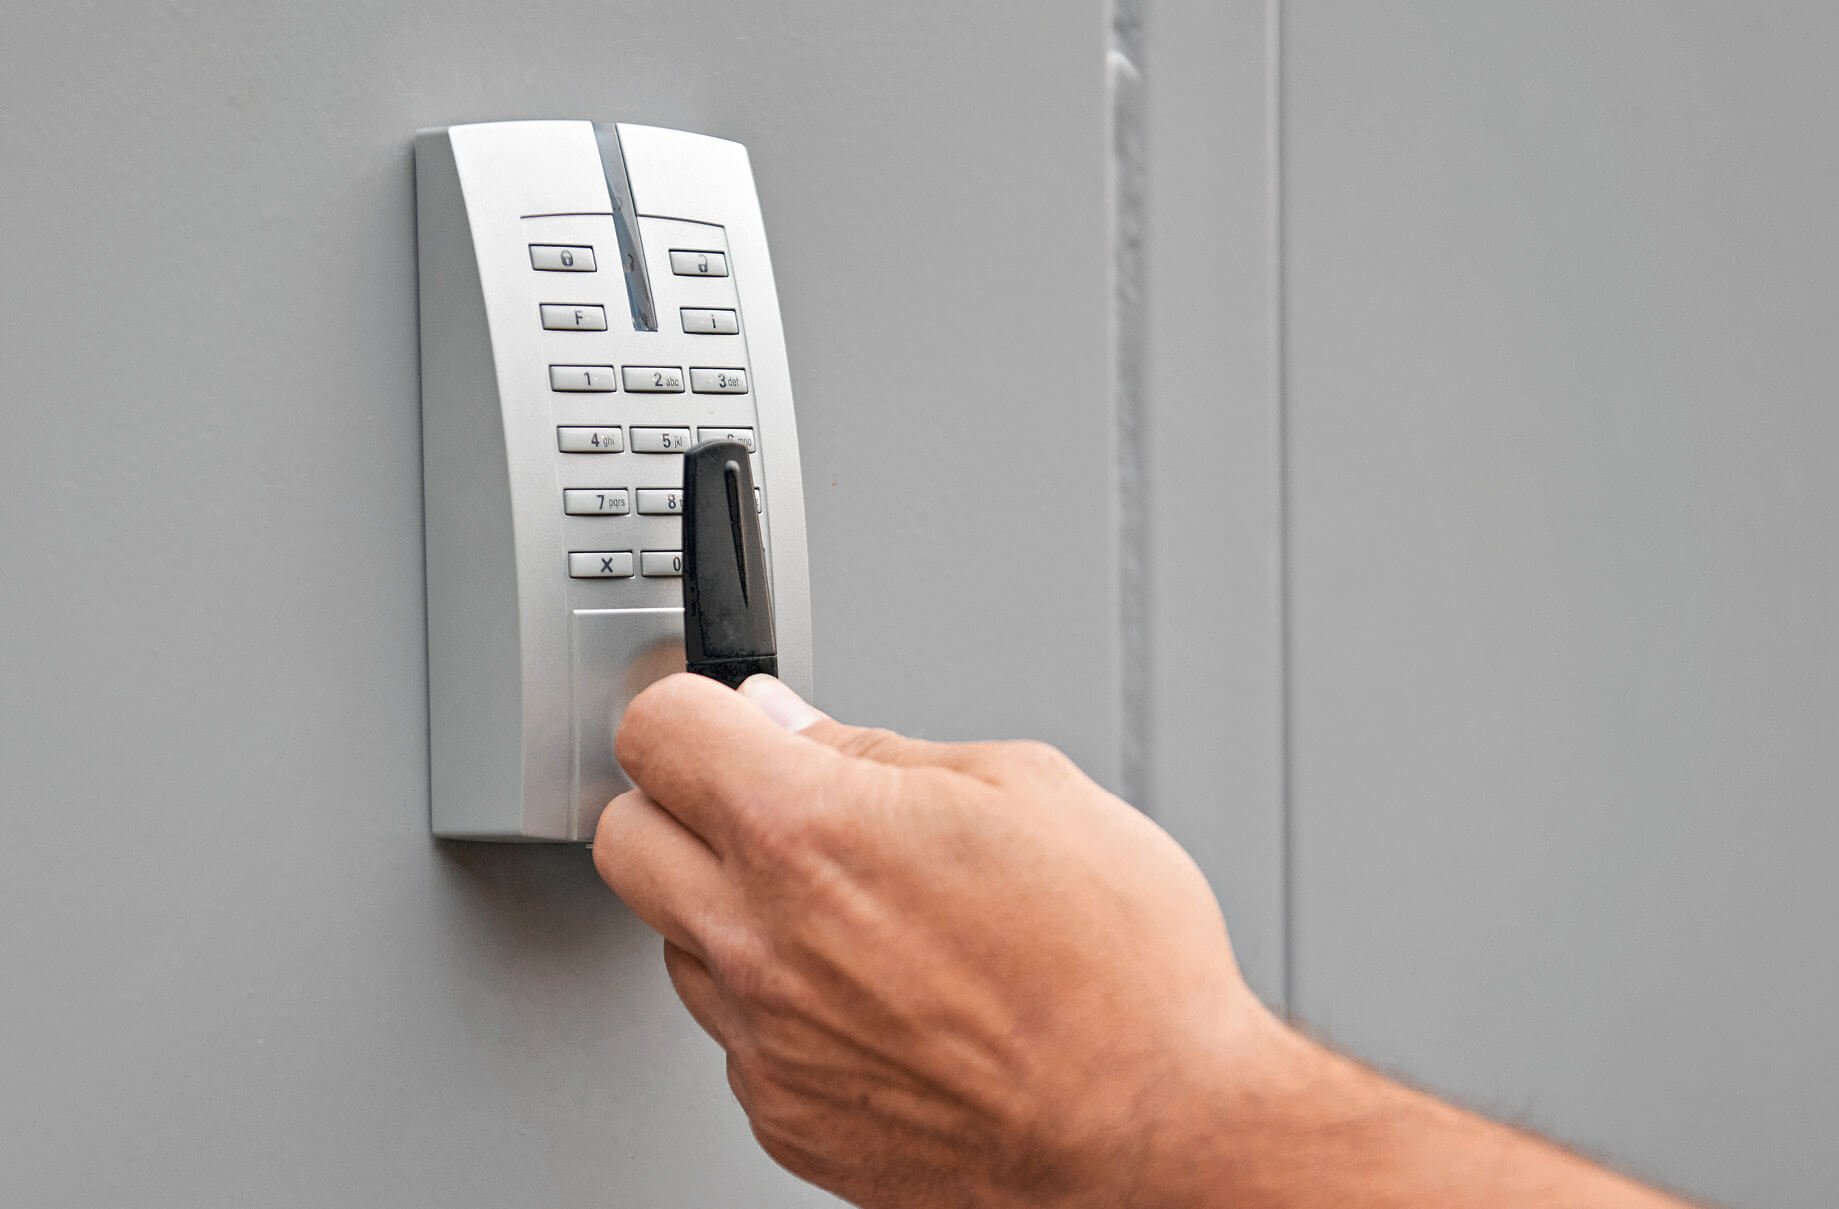 Zugang nur für Befugte – Mehrere Türen, ein angepasster Zutrittsschlüssel und eine dauerhafte Alarmanlage sichern die vertraulichen Daten im Container. Ⓒ Michael Koch